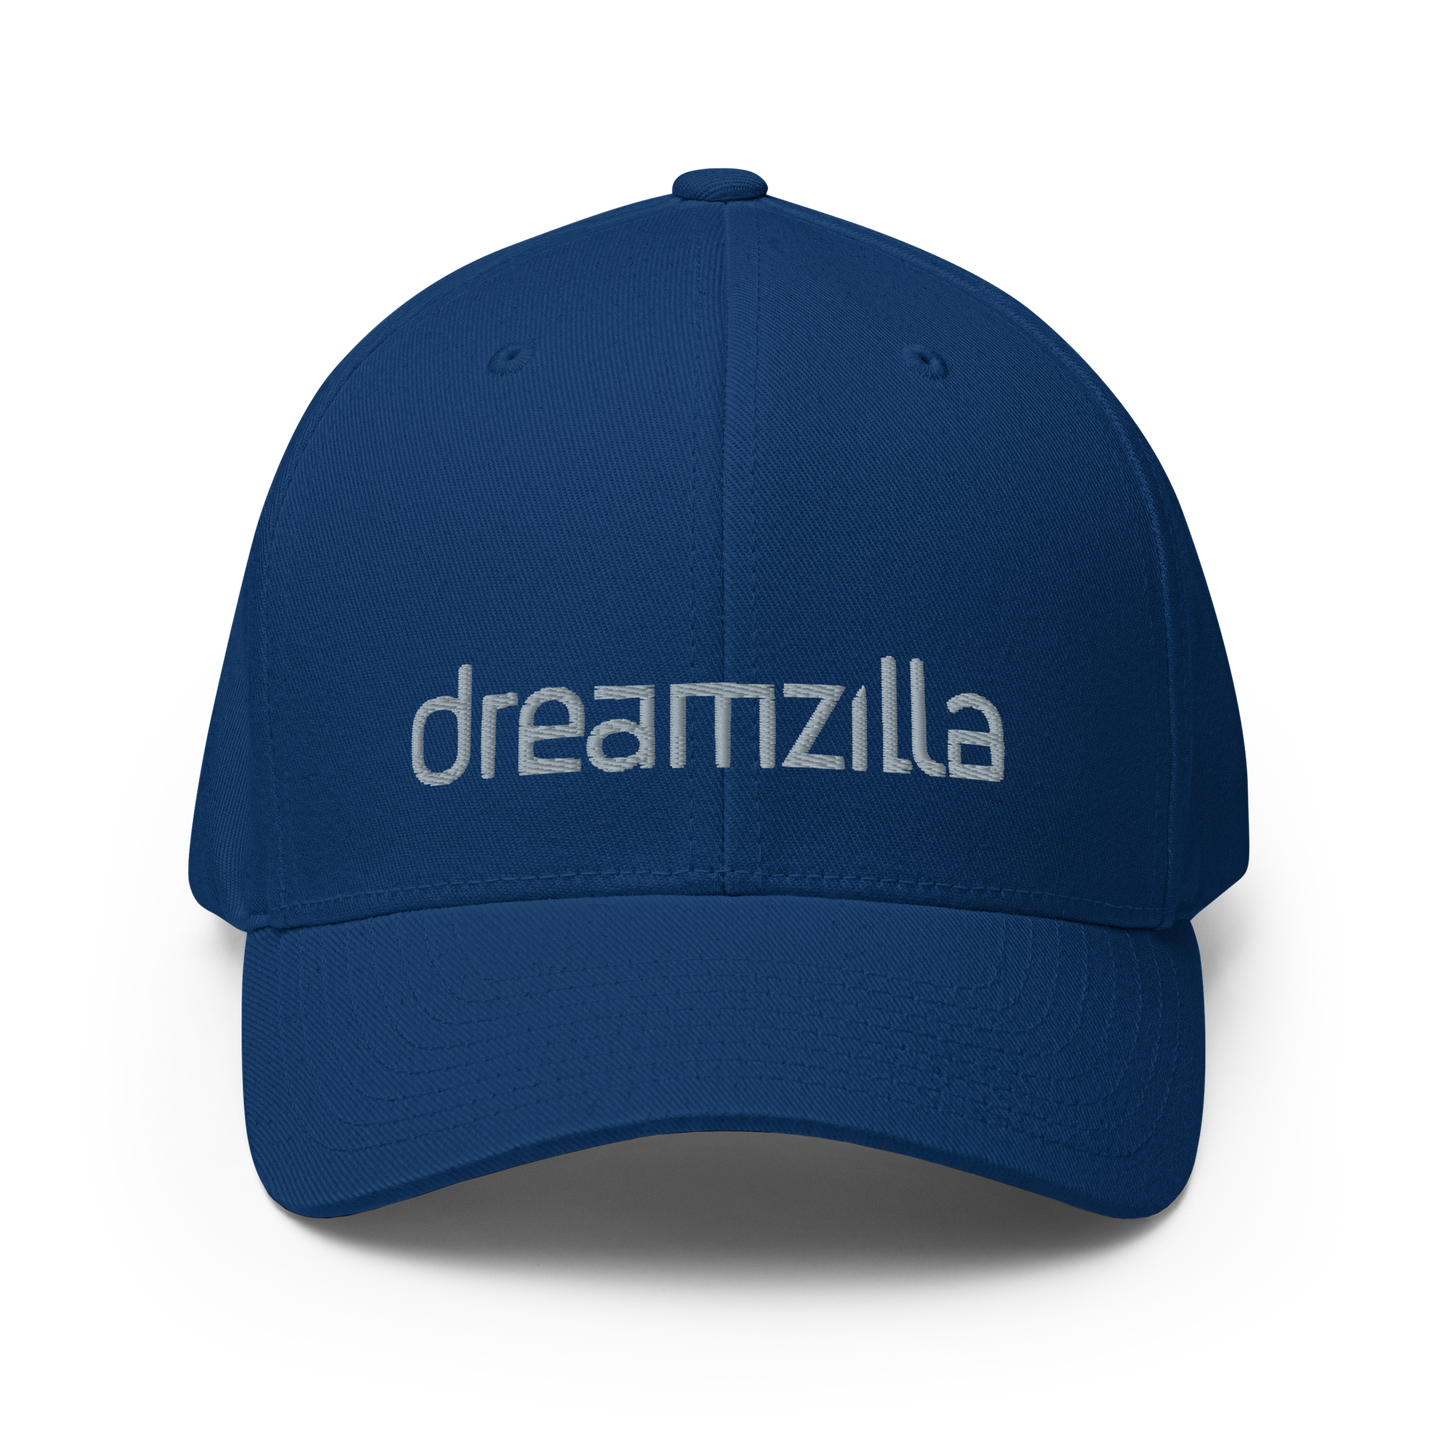 Dreamzilla Flexfit Cap in Royal Blue